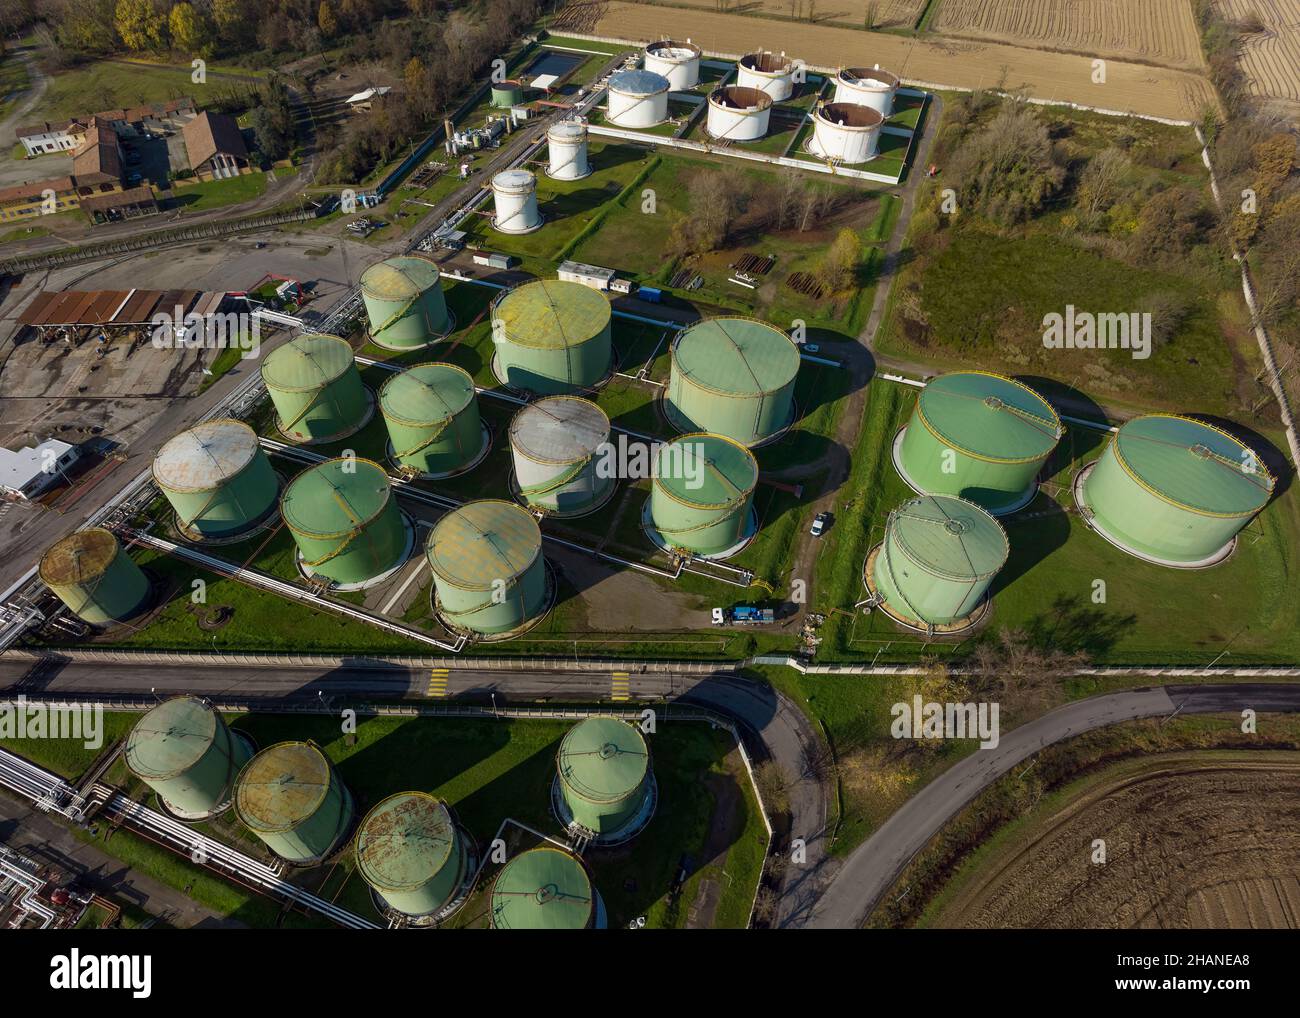 Vue aérienne des réservoirs de stockage de pétrole ronds en acier, des services de stockage et de manutention des produits pétroliers. Banque D'Images